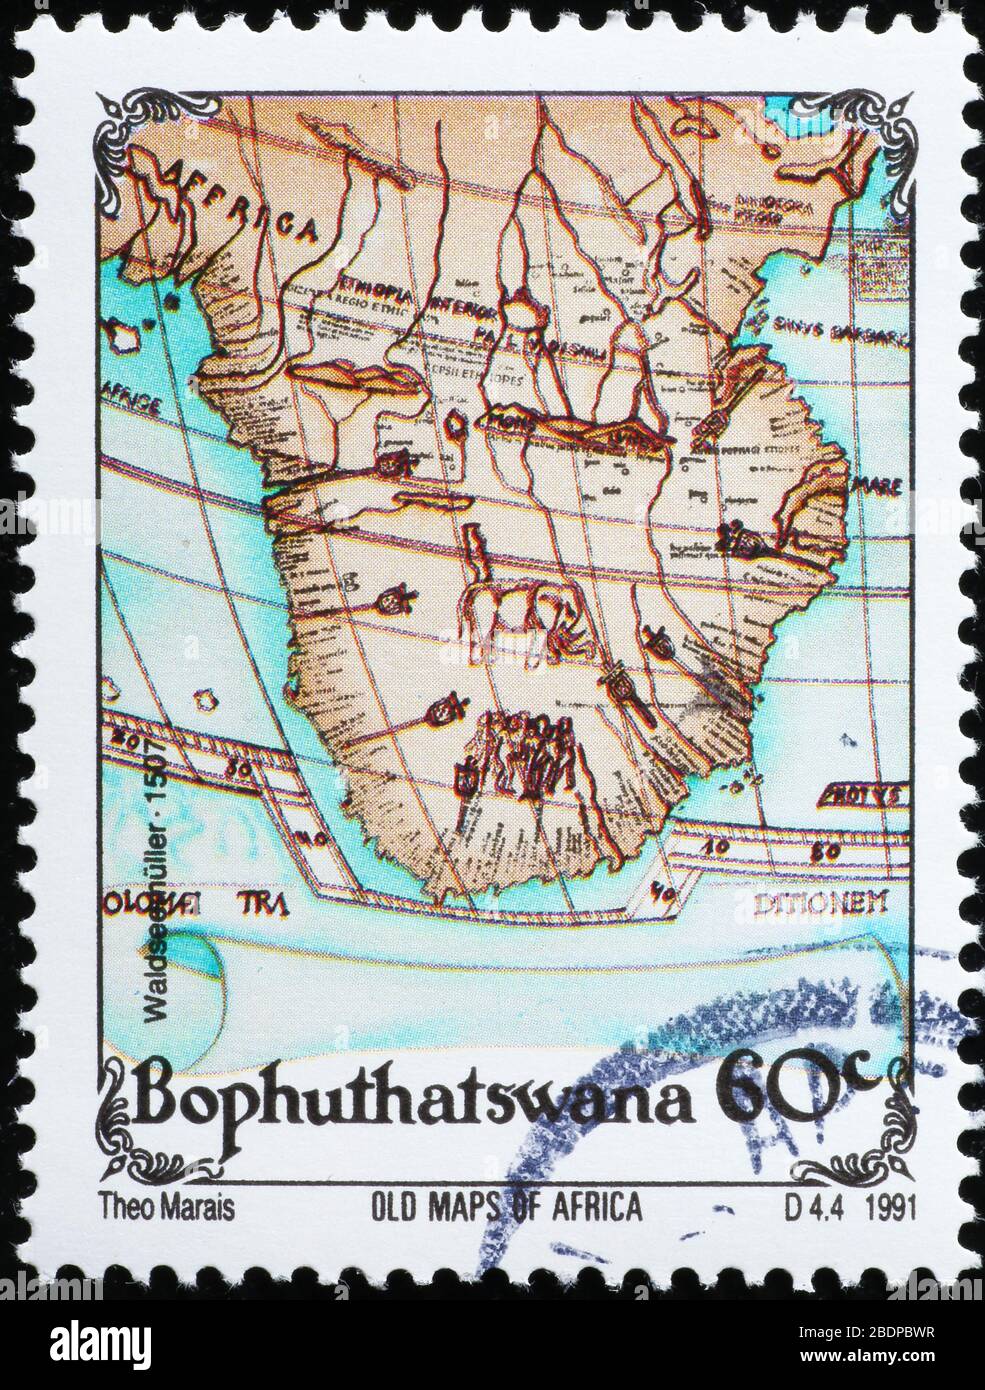 Mapa antiguo del sur de África en sello postal Foto de stock